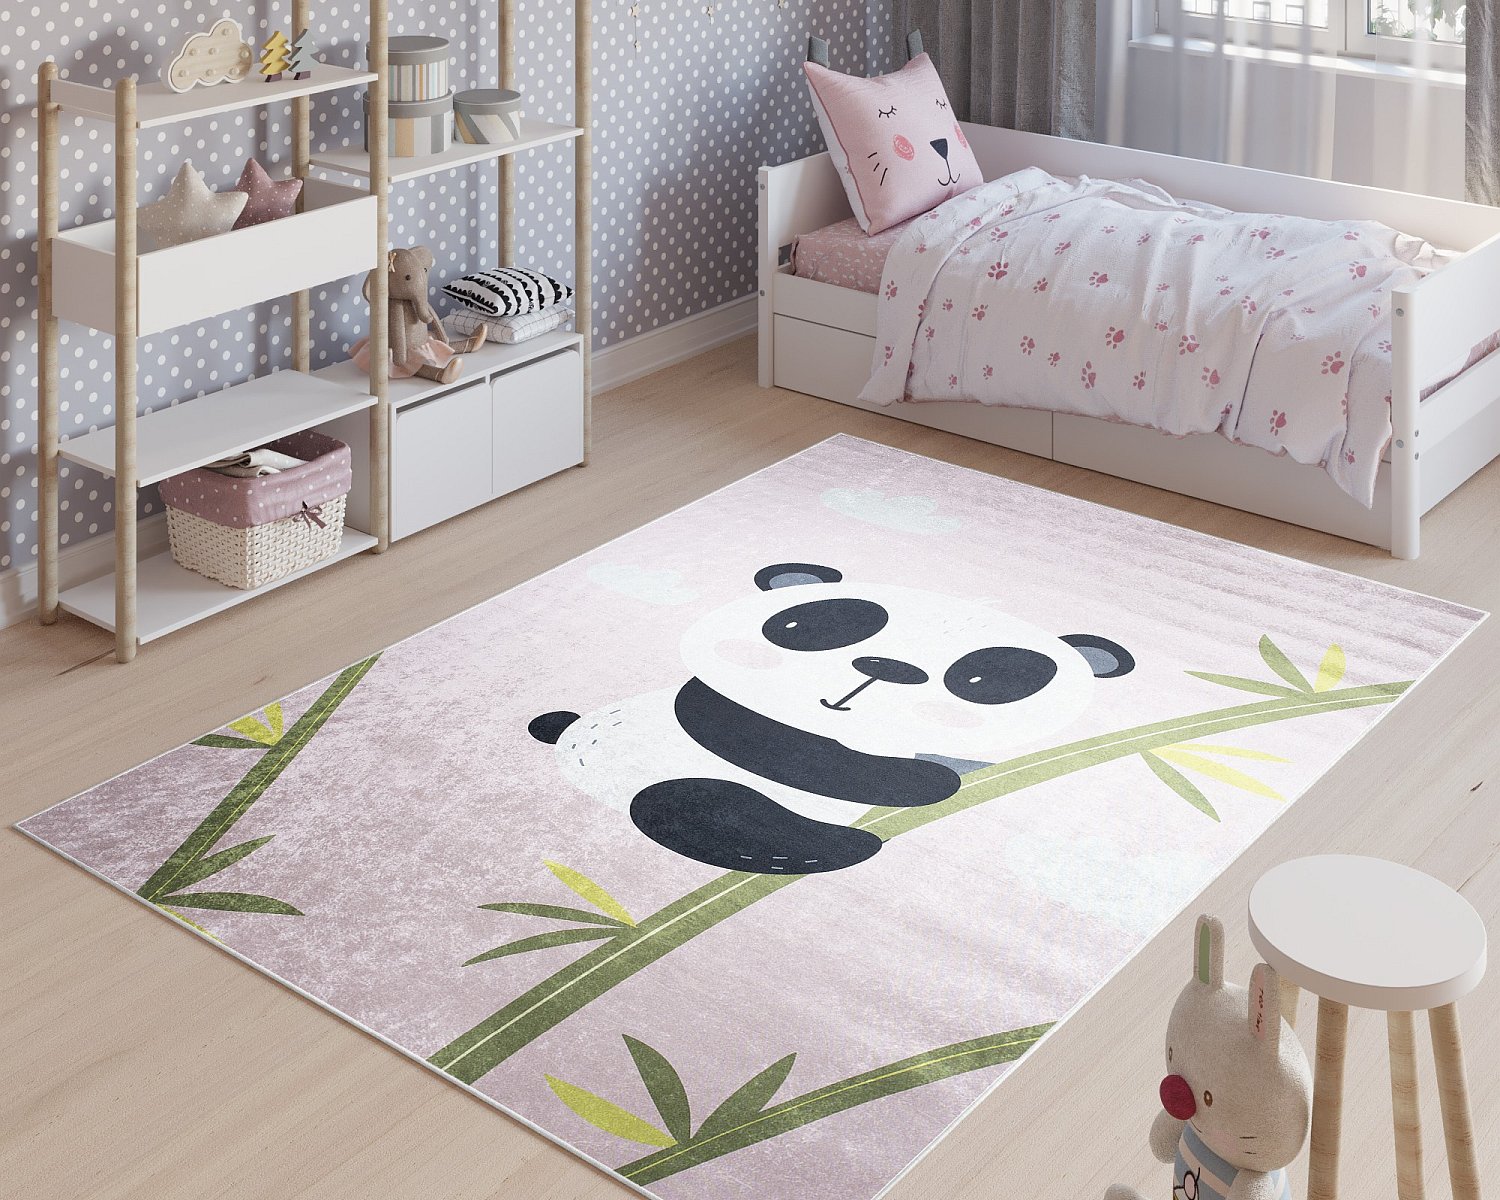 Śliczny dywan do pokoju dziecięcego możesz mieć nawet w 24 godz